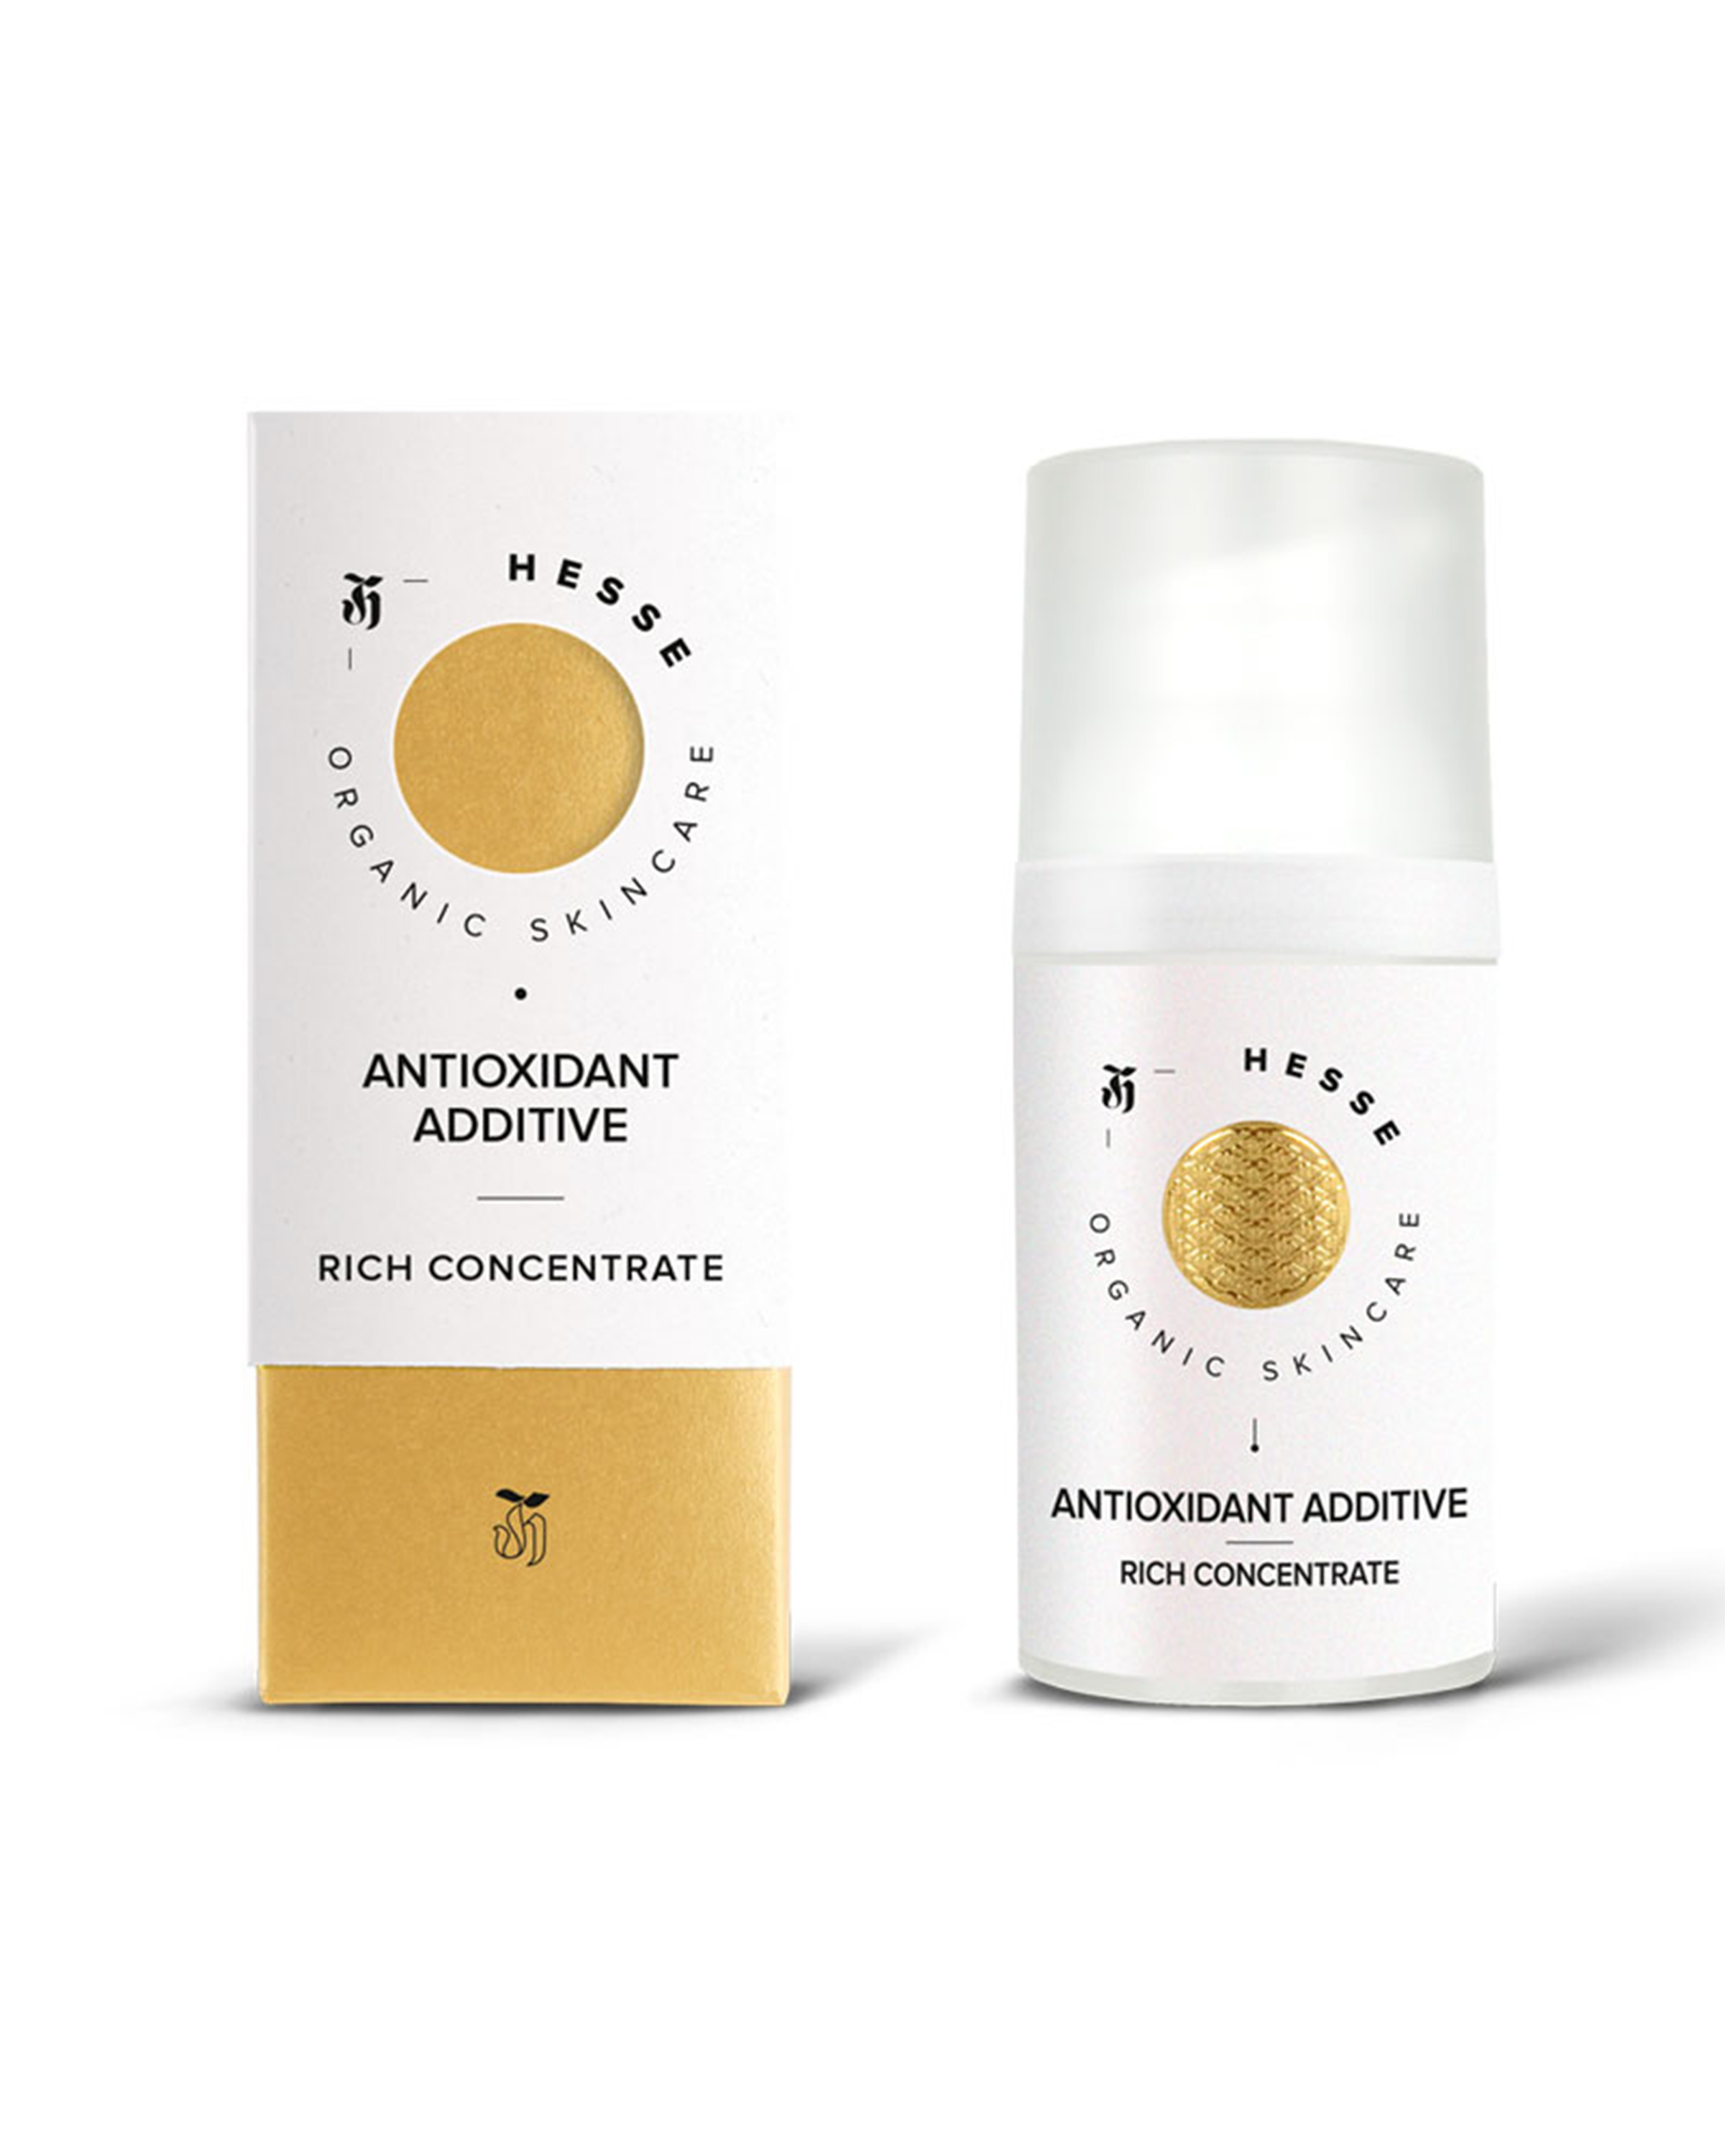 Hesse Antioxidant Additive